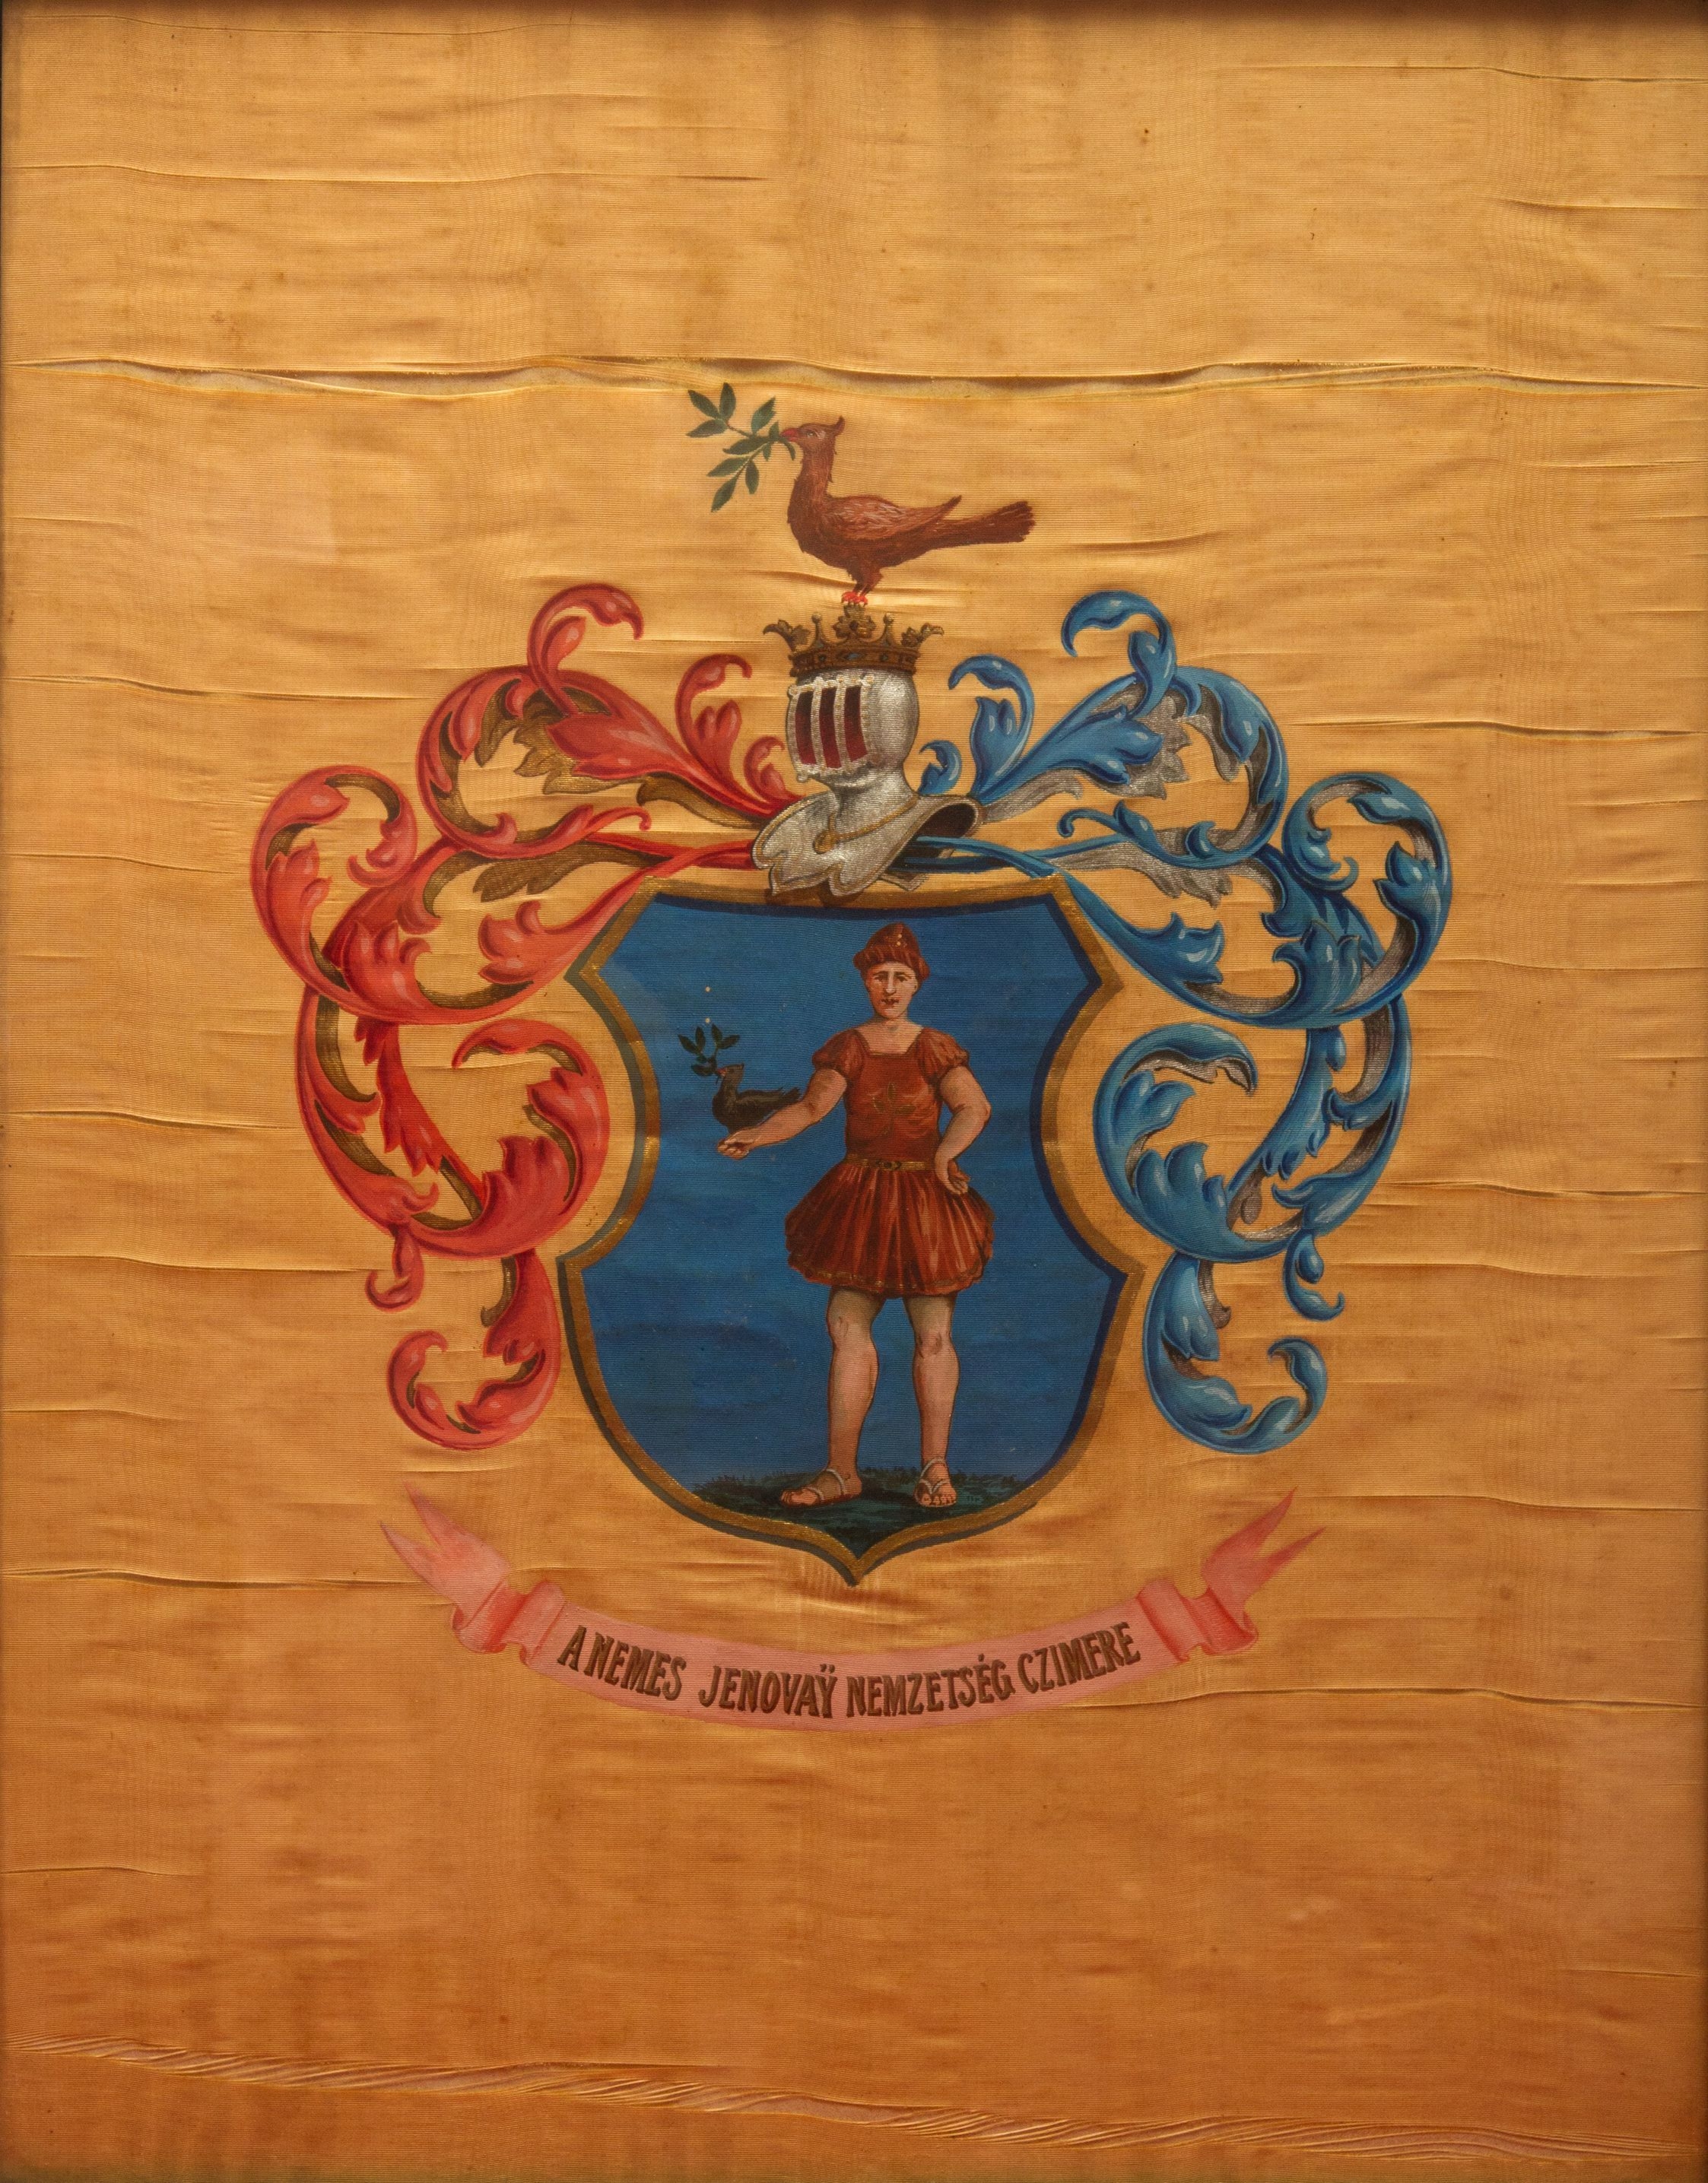 Jenovai coat of arms